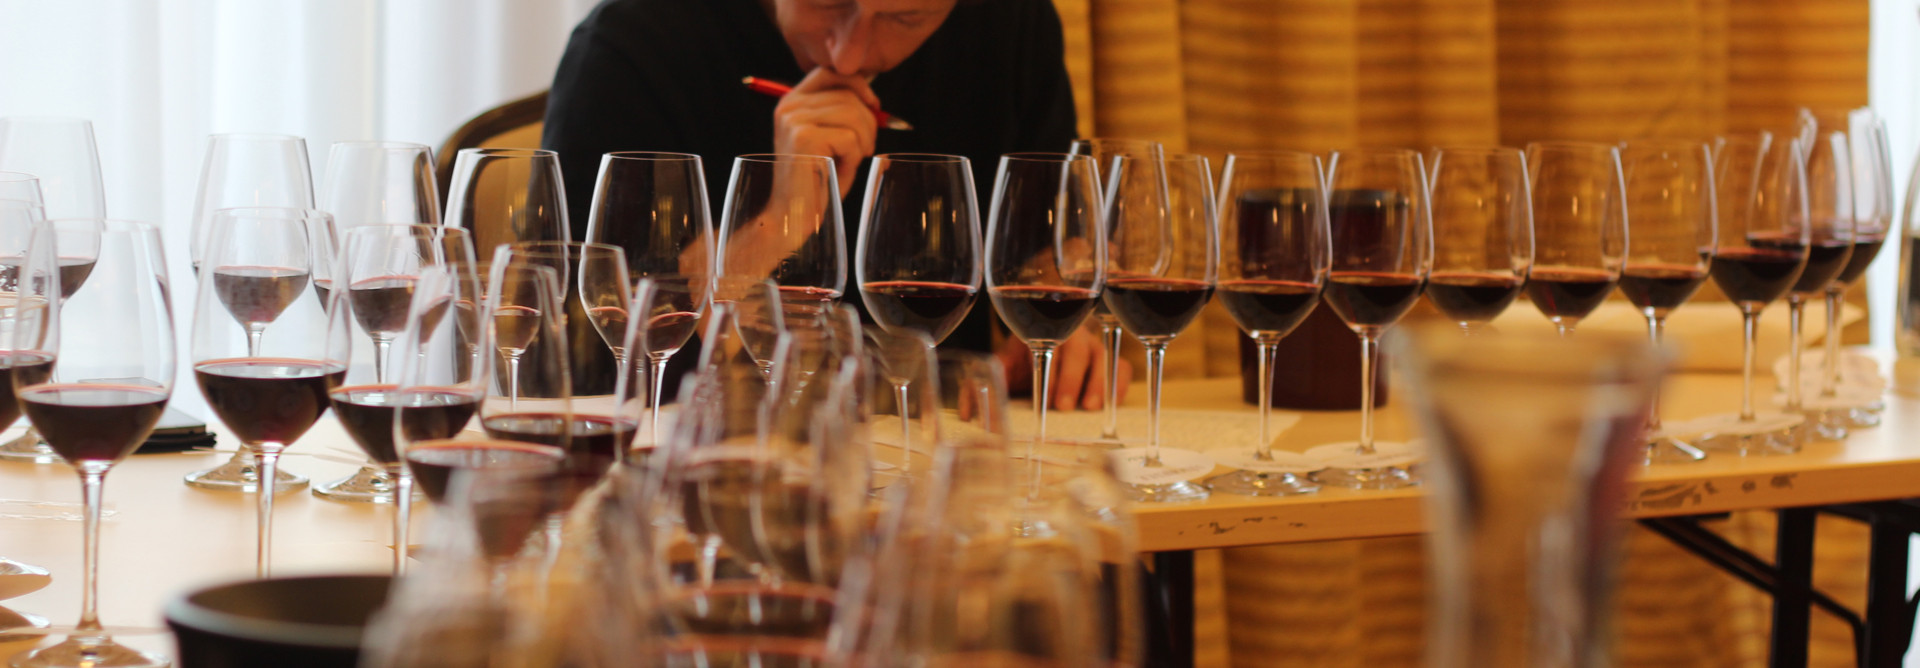 Slovenskí vinári opäť úspešní na Prague Wine Trophy